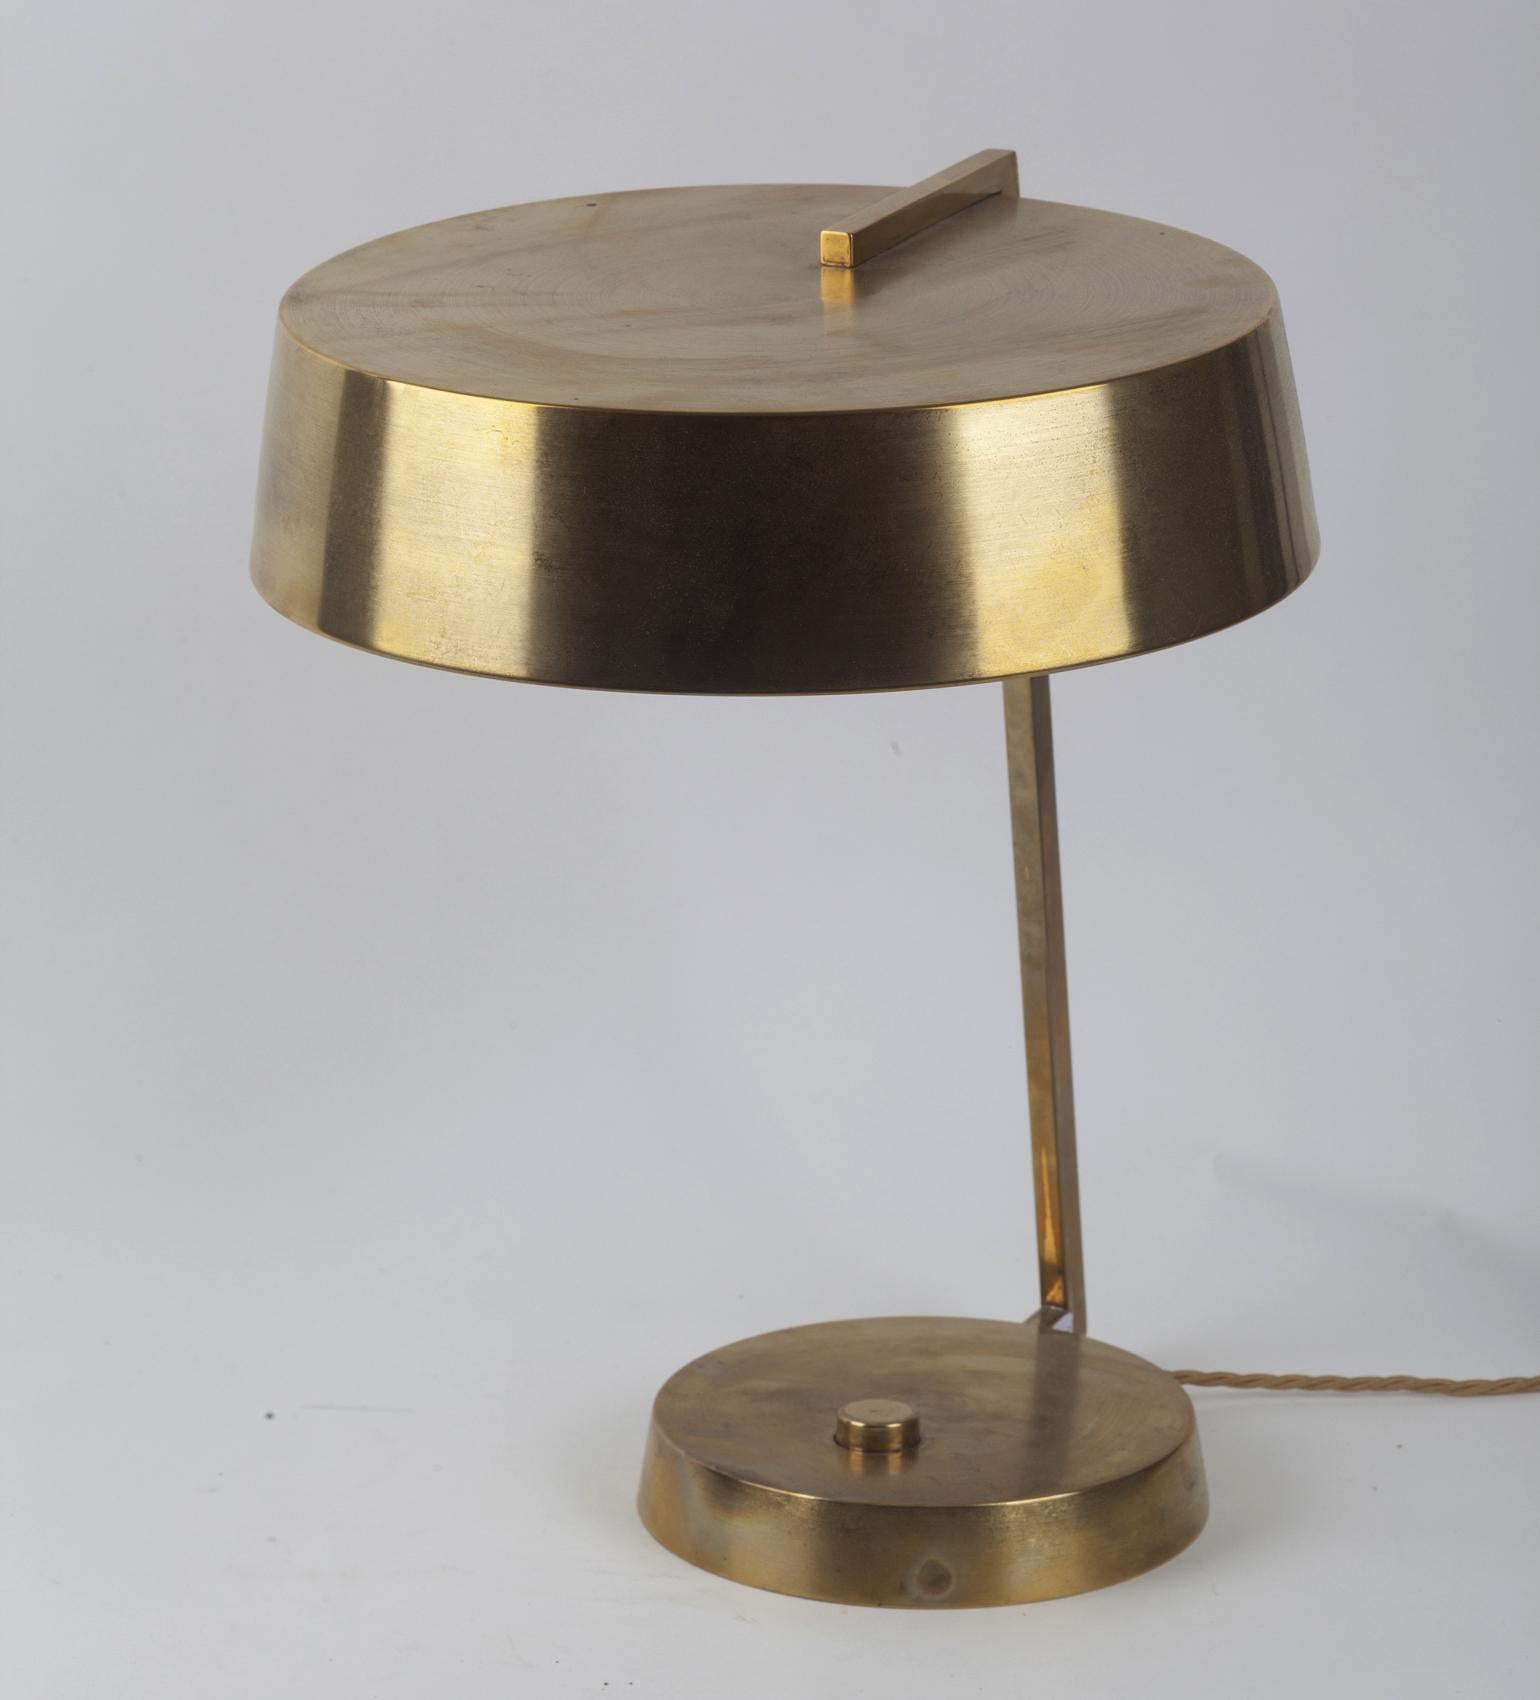 Italienische Tisch- oder Schreibtischlampe aus den 1950er Jahren von Stilux, Mailand. Sie hat einen runden Messingschirm, der von einem Messingarm und einem runden Messingsockel getragen wird.
  